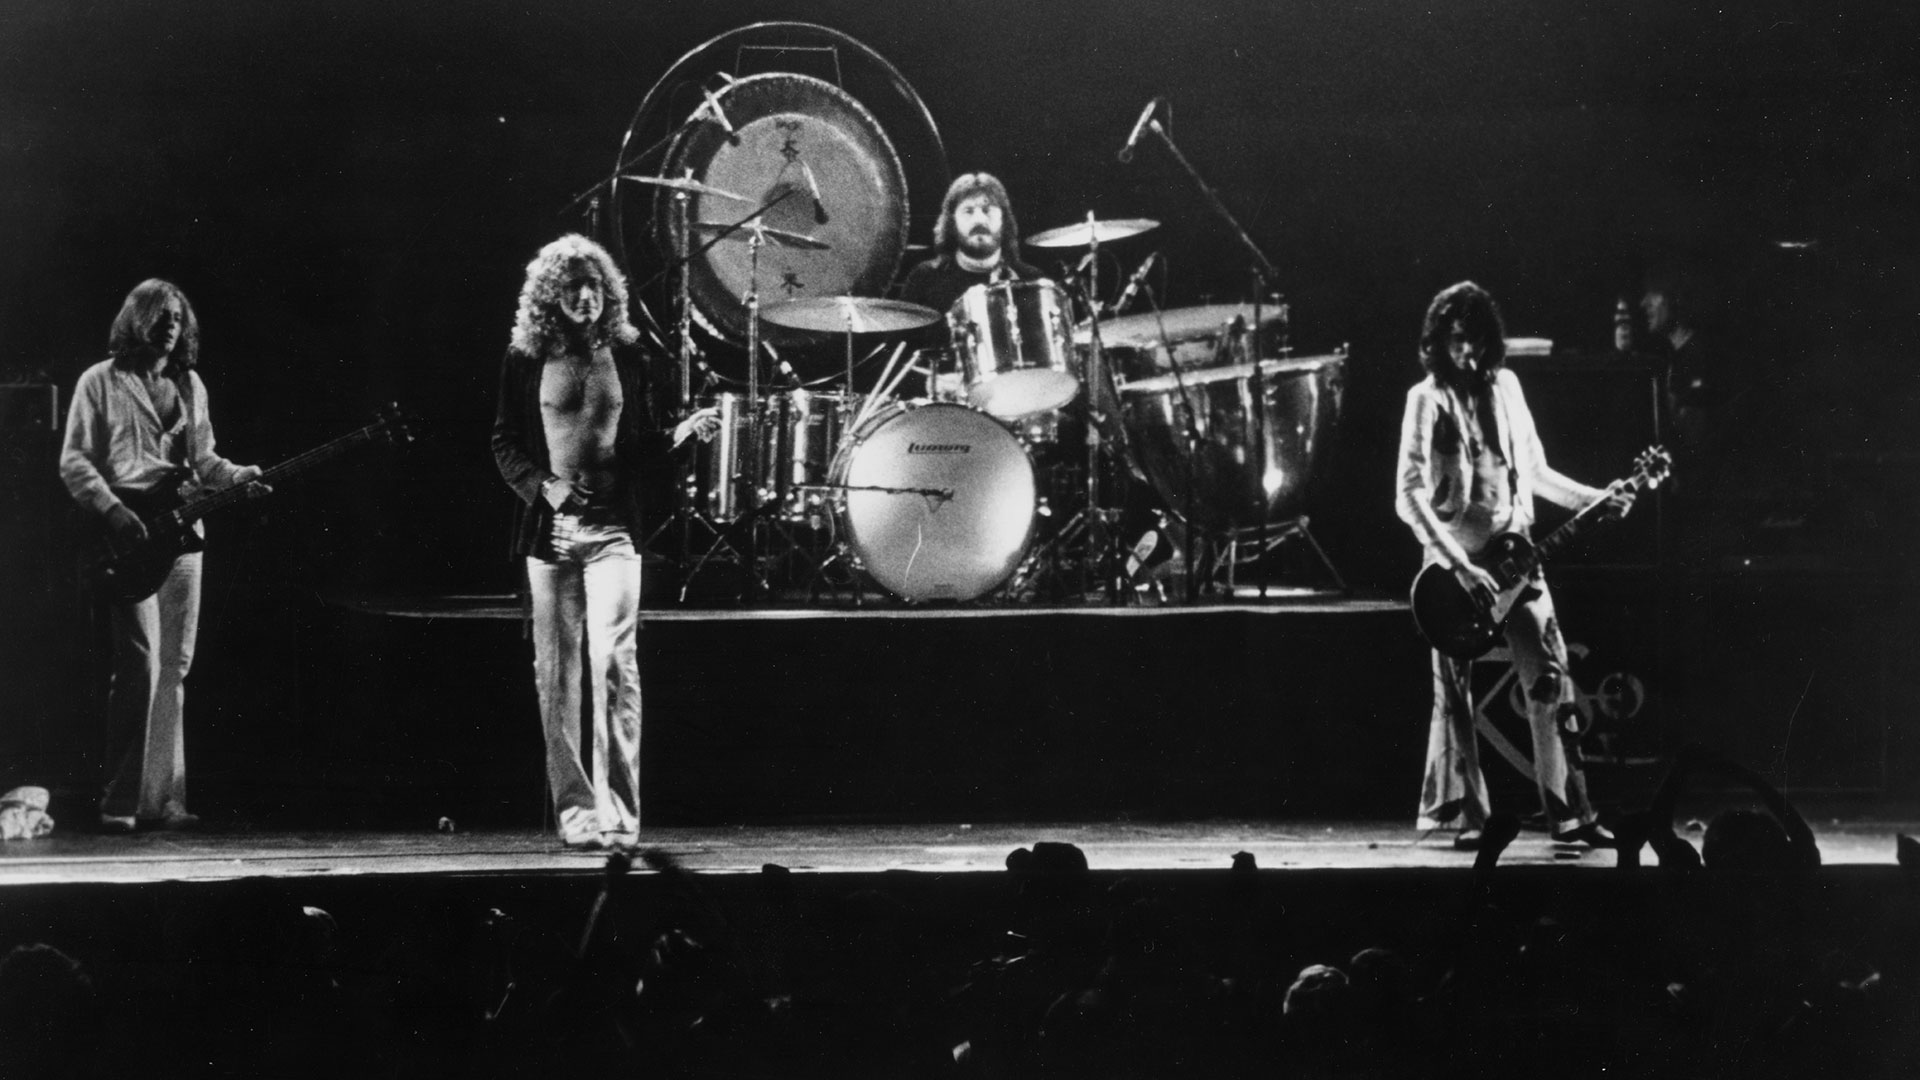 Después de muchos problemas y pérdidas personales terribles, en septiembre de 1980 Zeppelin se preparaba para volver a los escenarios en Estados Unidos. (Photo by Michael Ochs Archives/Getty Images)